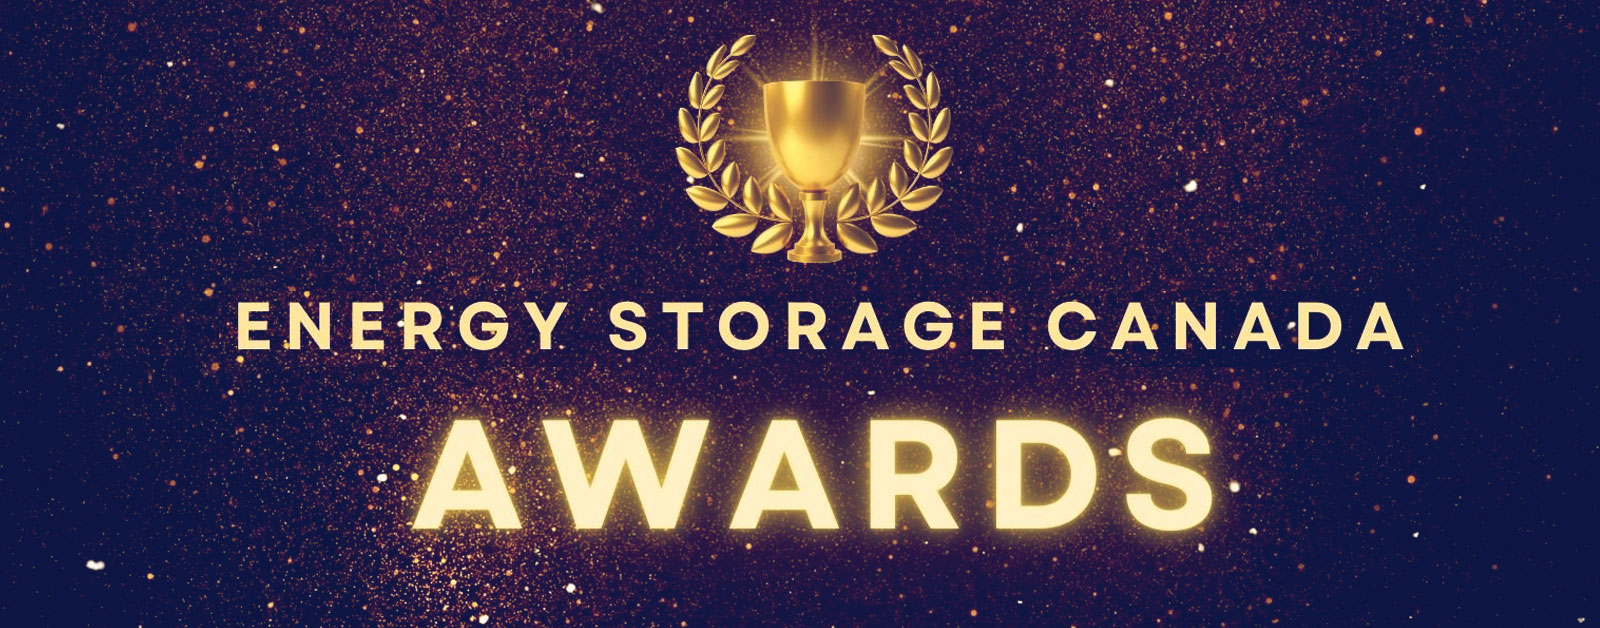 Energy Storage Canada Awards